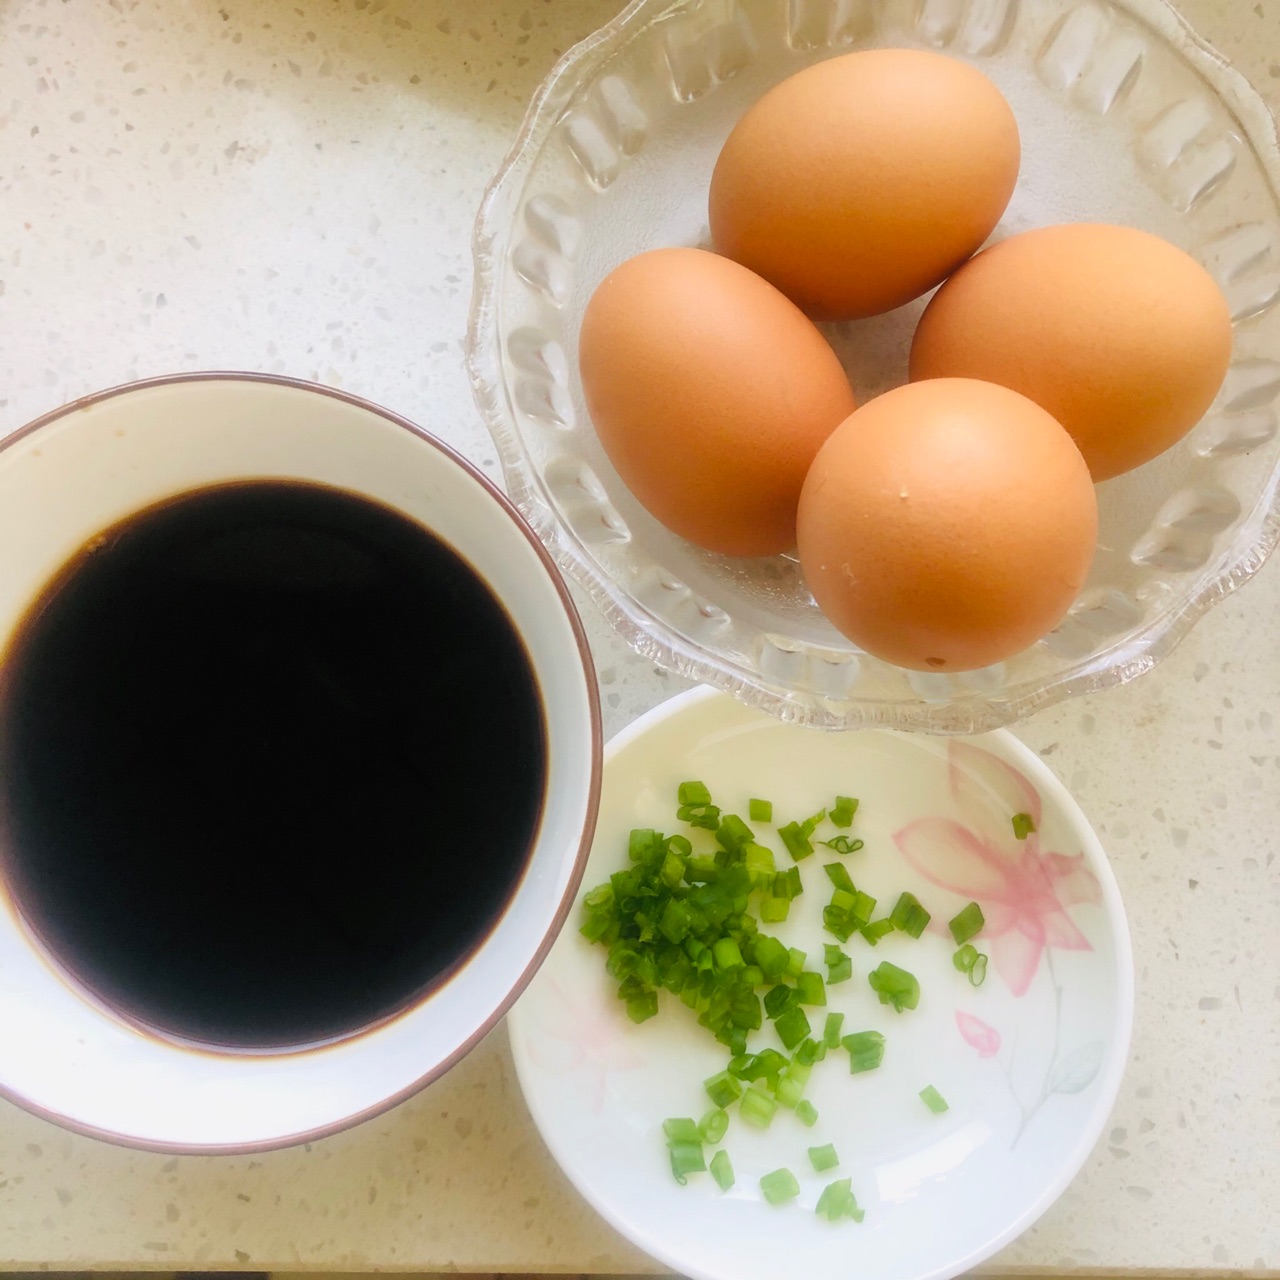 糖醋虎皮鹌鹑蛋怎么做_糖醋虎皮鹌鹑蛋的做法_wiwiwi_豆果美食